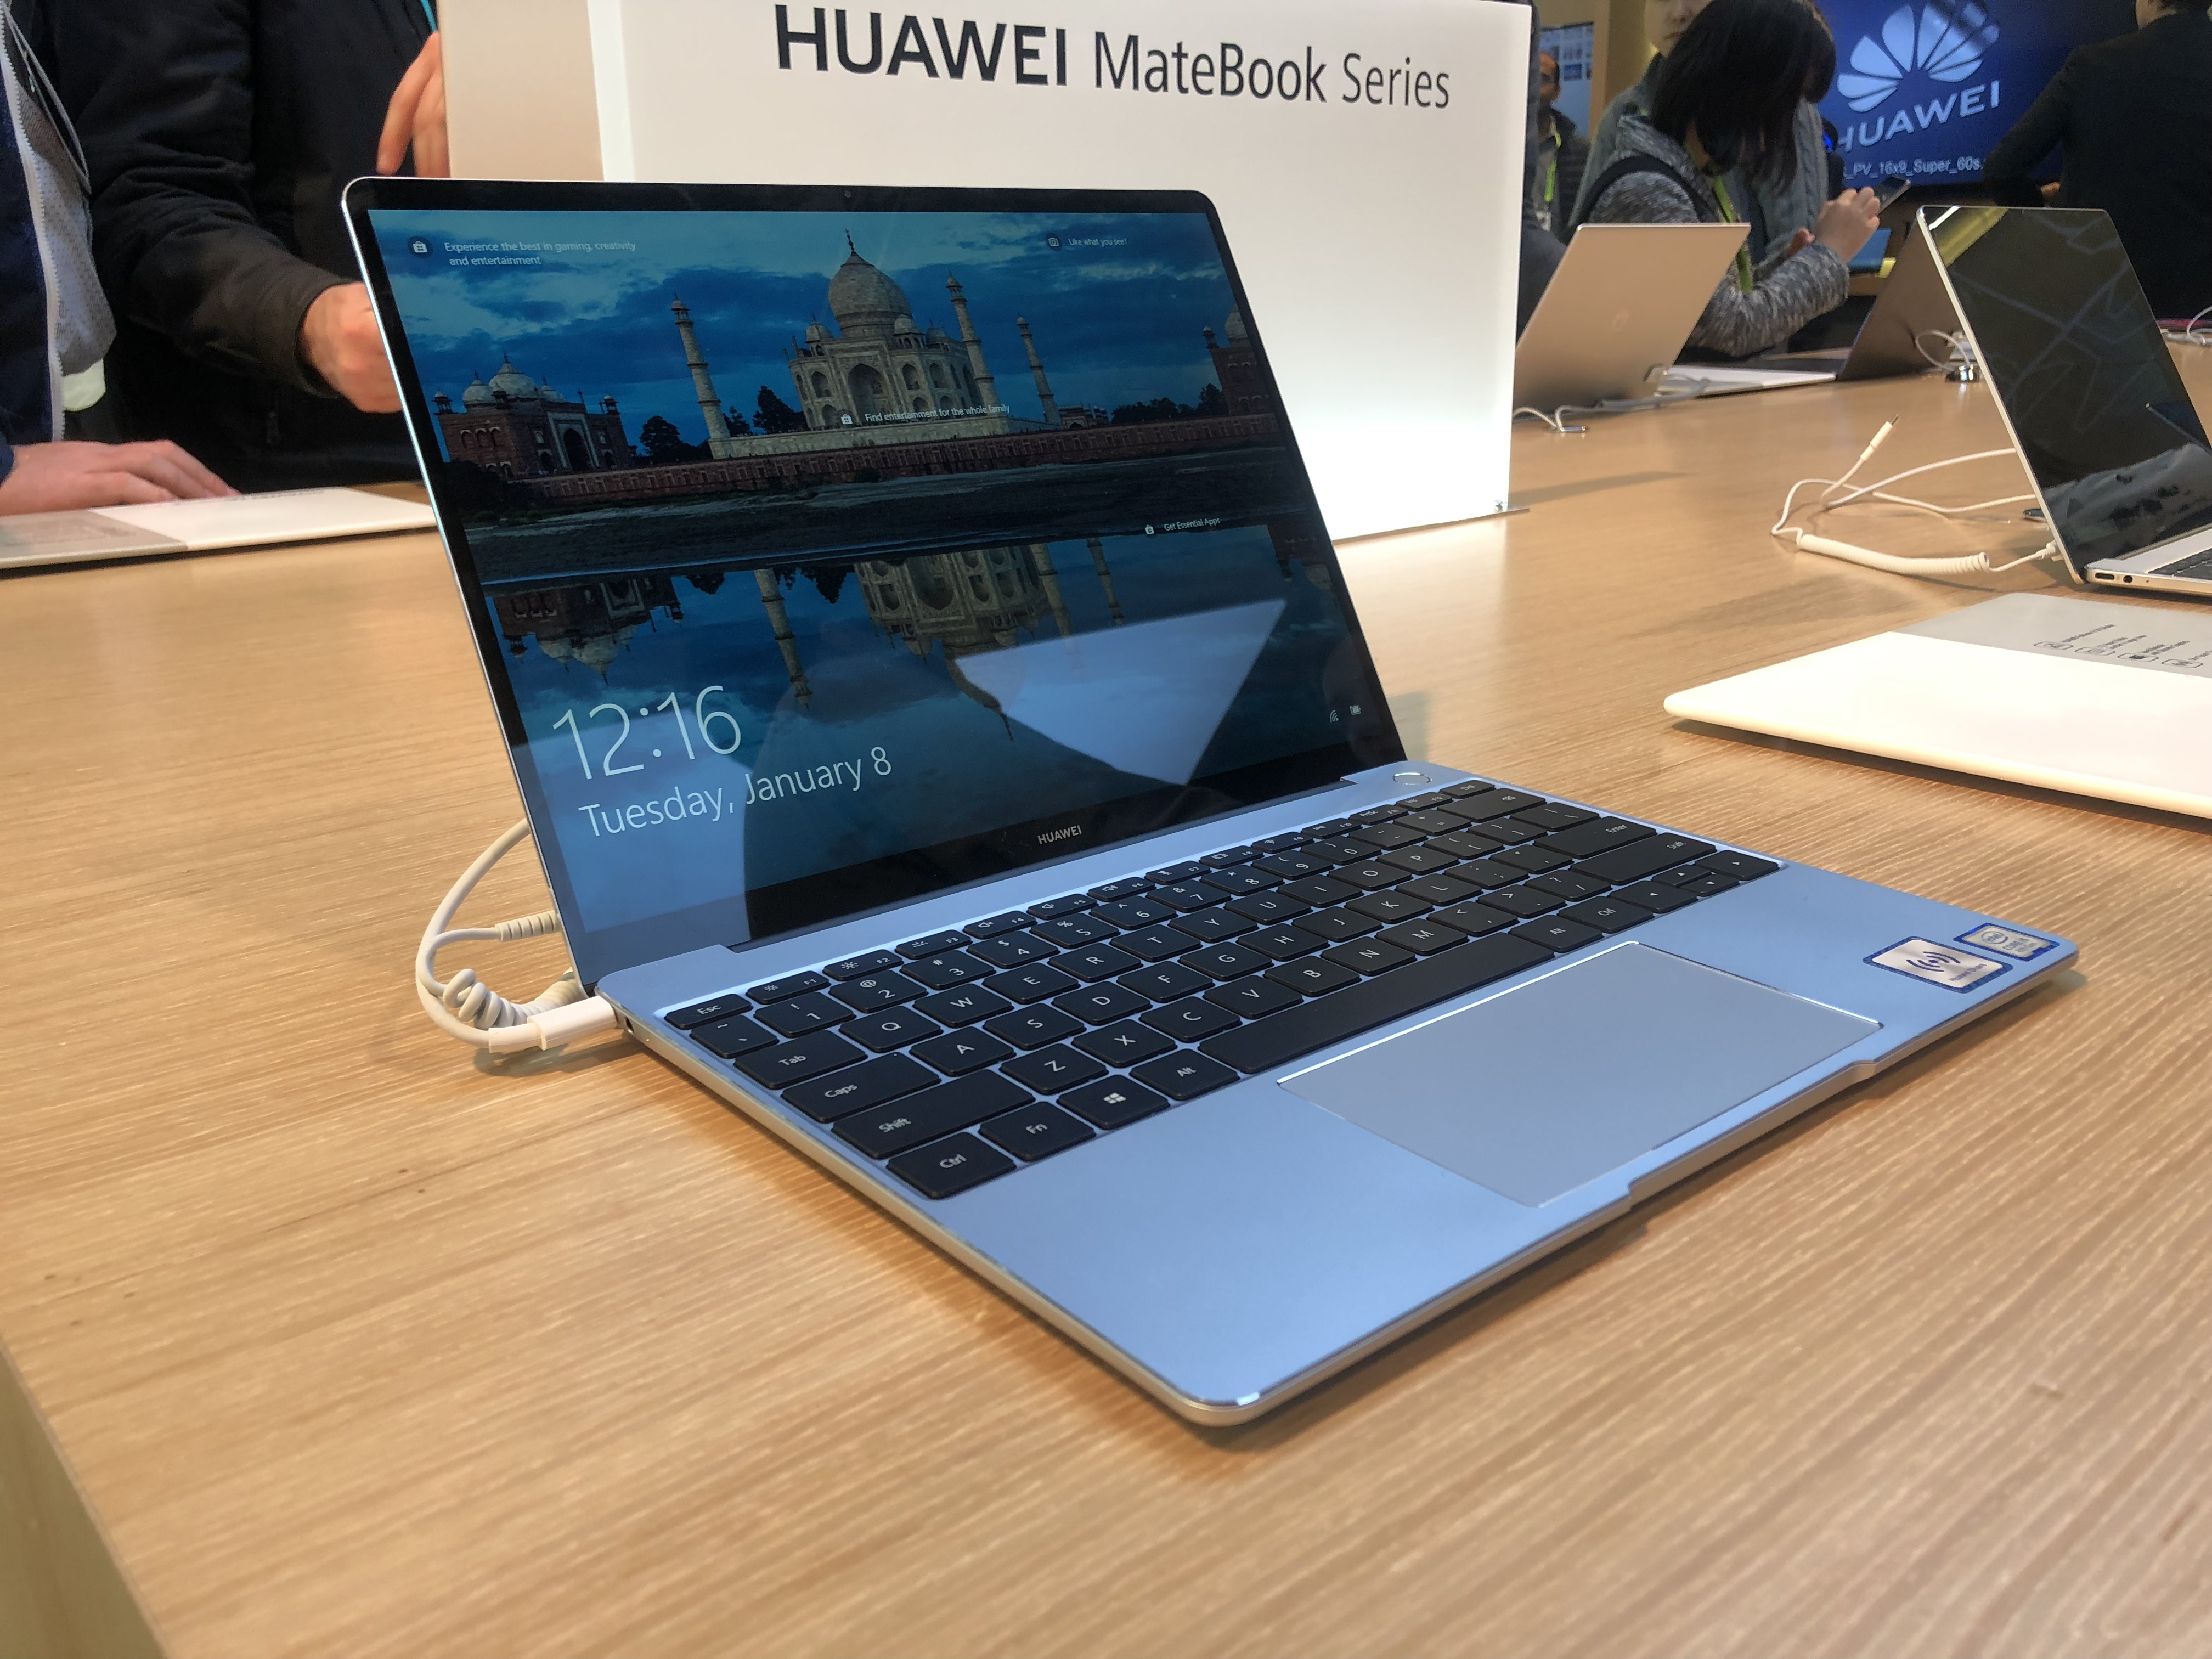 Huawei MateBook 13 initial verdict